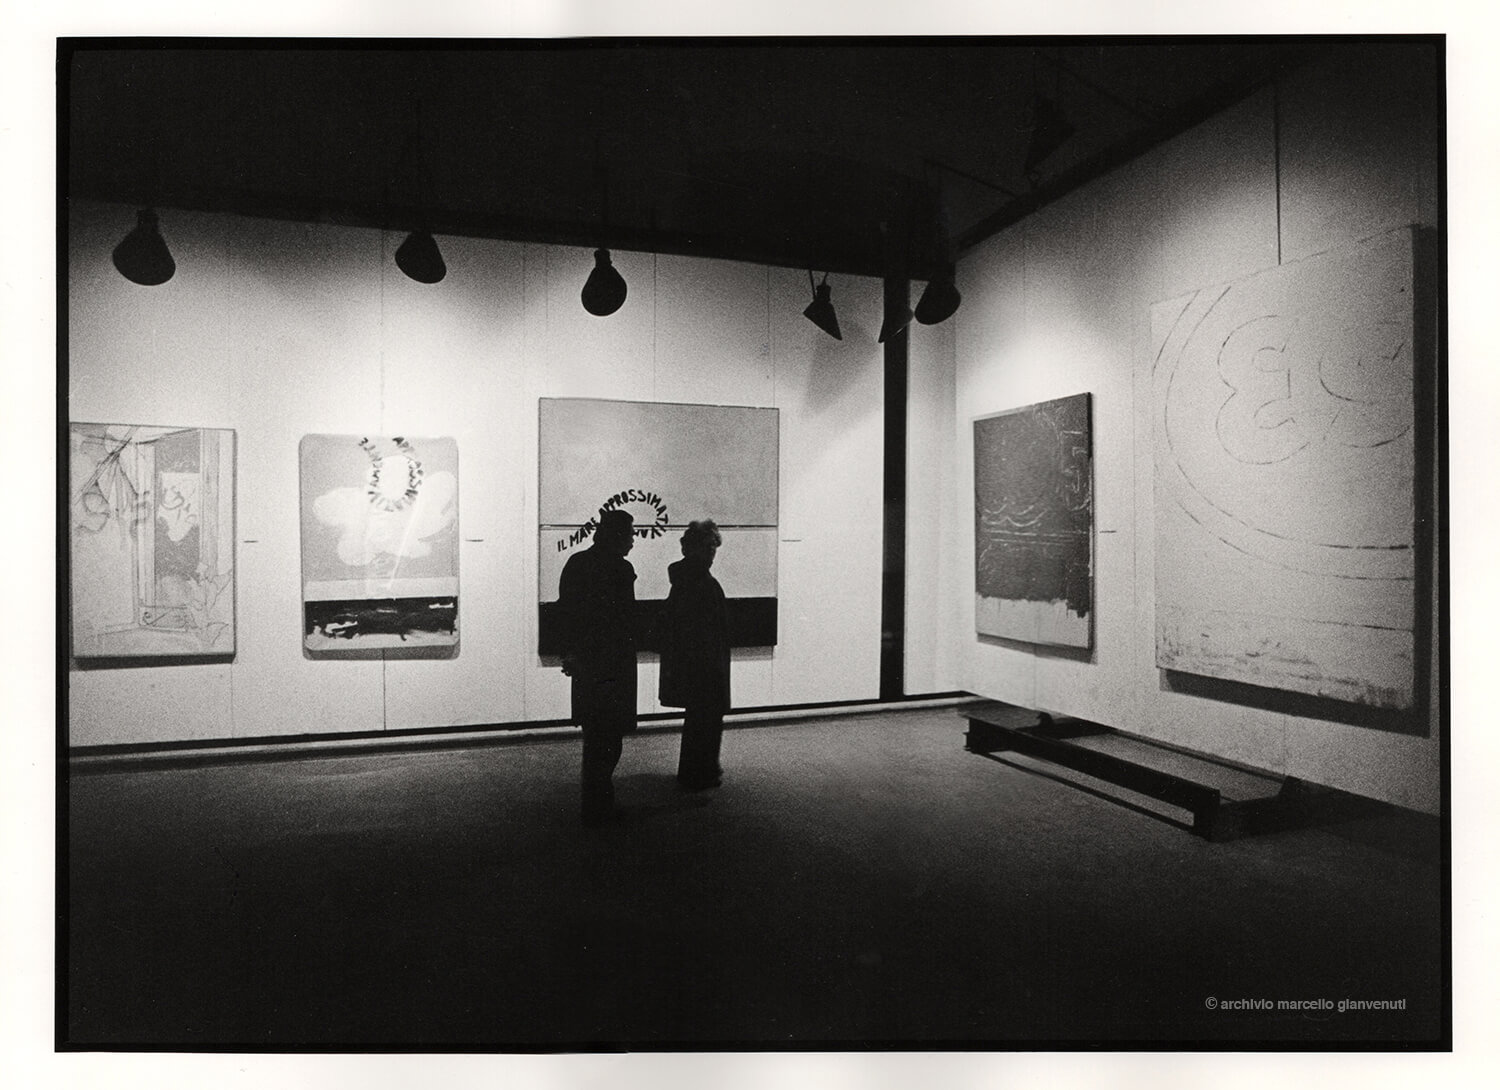 © Documentazione della mostra antologica di Mario Schifano a Parma nel 1974